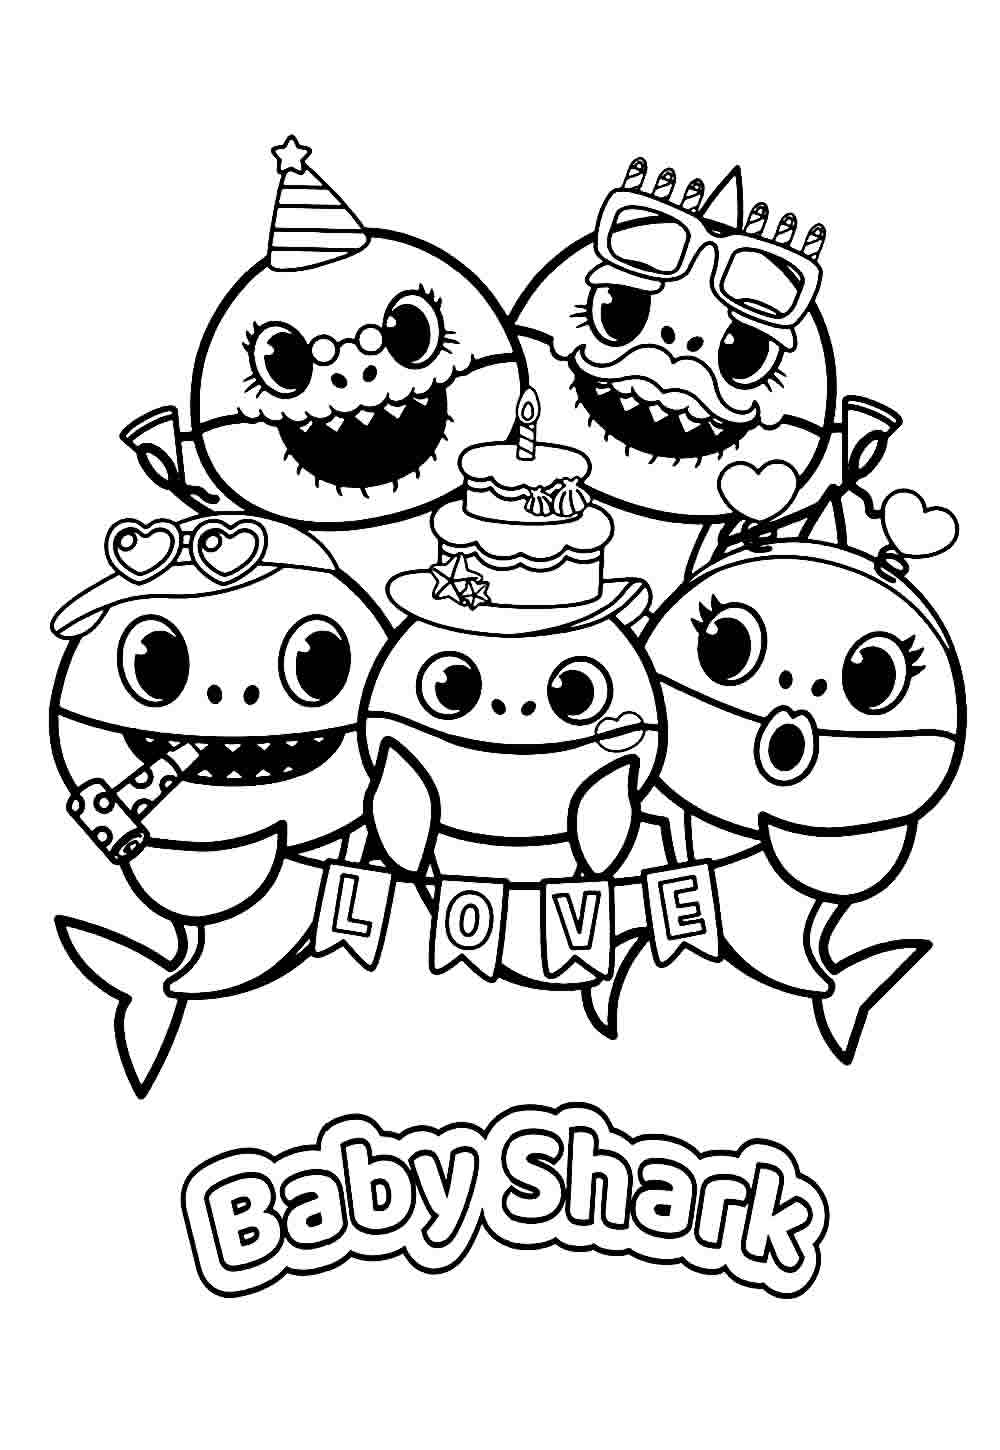 Desenho do Baby Shark